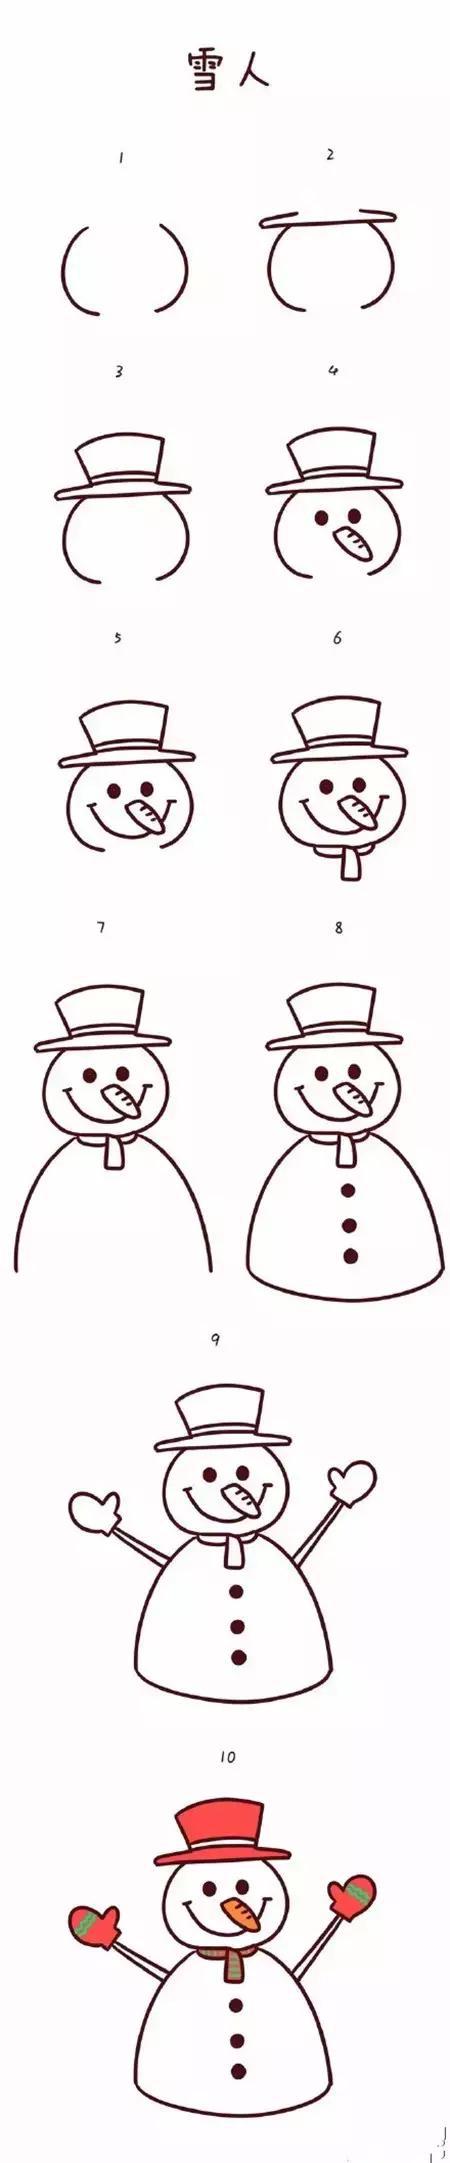 圣诞节简笔画图片大全 简单又可爱的圣诞节简笔画(6)